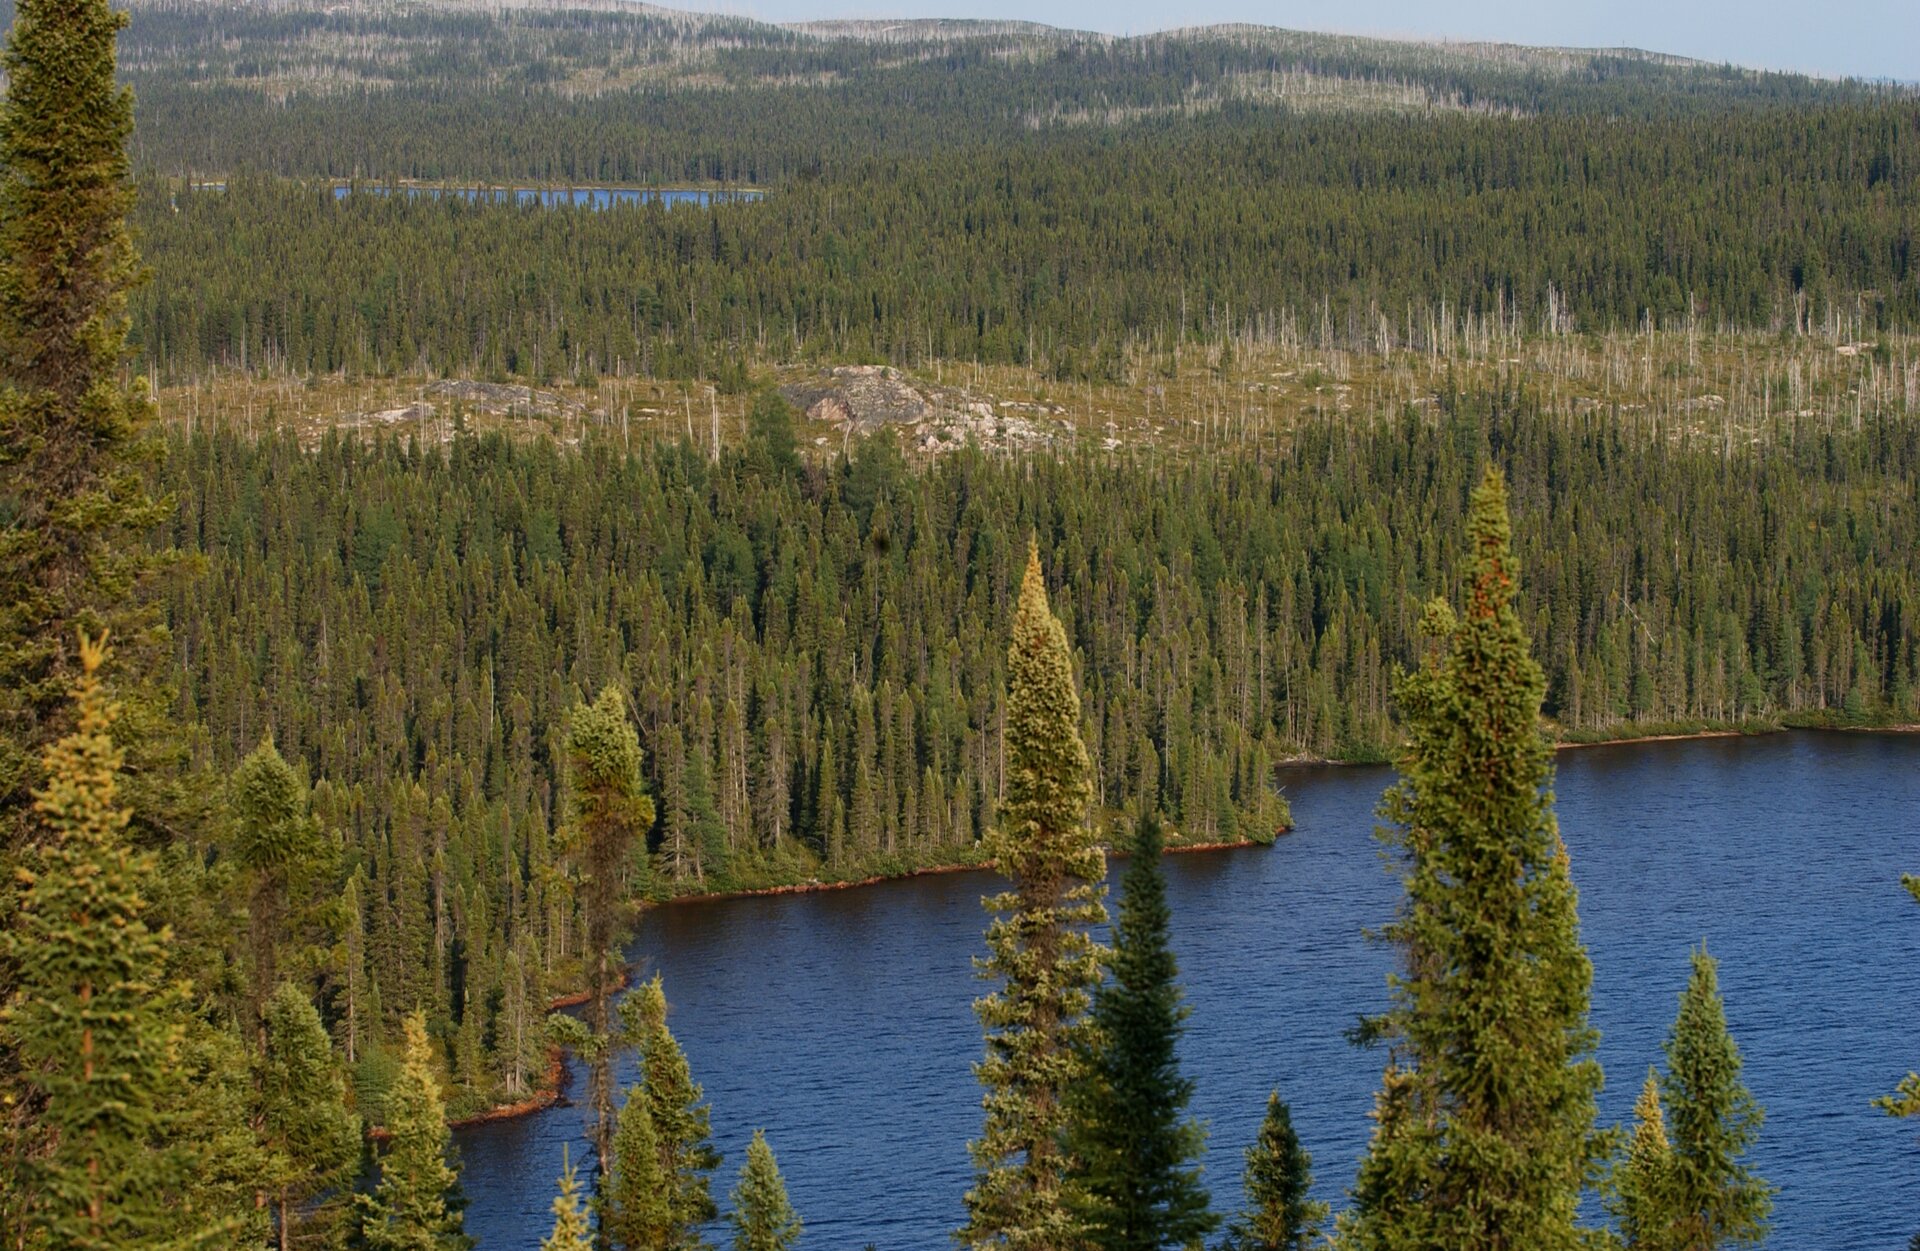 Fotografia prezentuje krajobraz tajgi latem. Na fotografii wykonanej z wysokości widoczne wierzchołki świerków na tle jeziora oraz gęsty las świerkowy rozciągający się po horyzont.